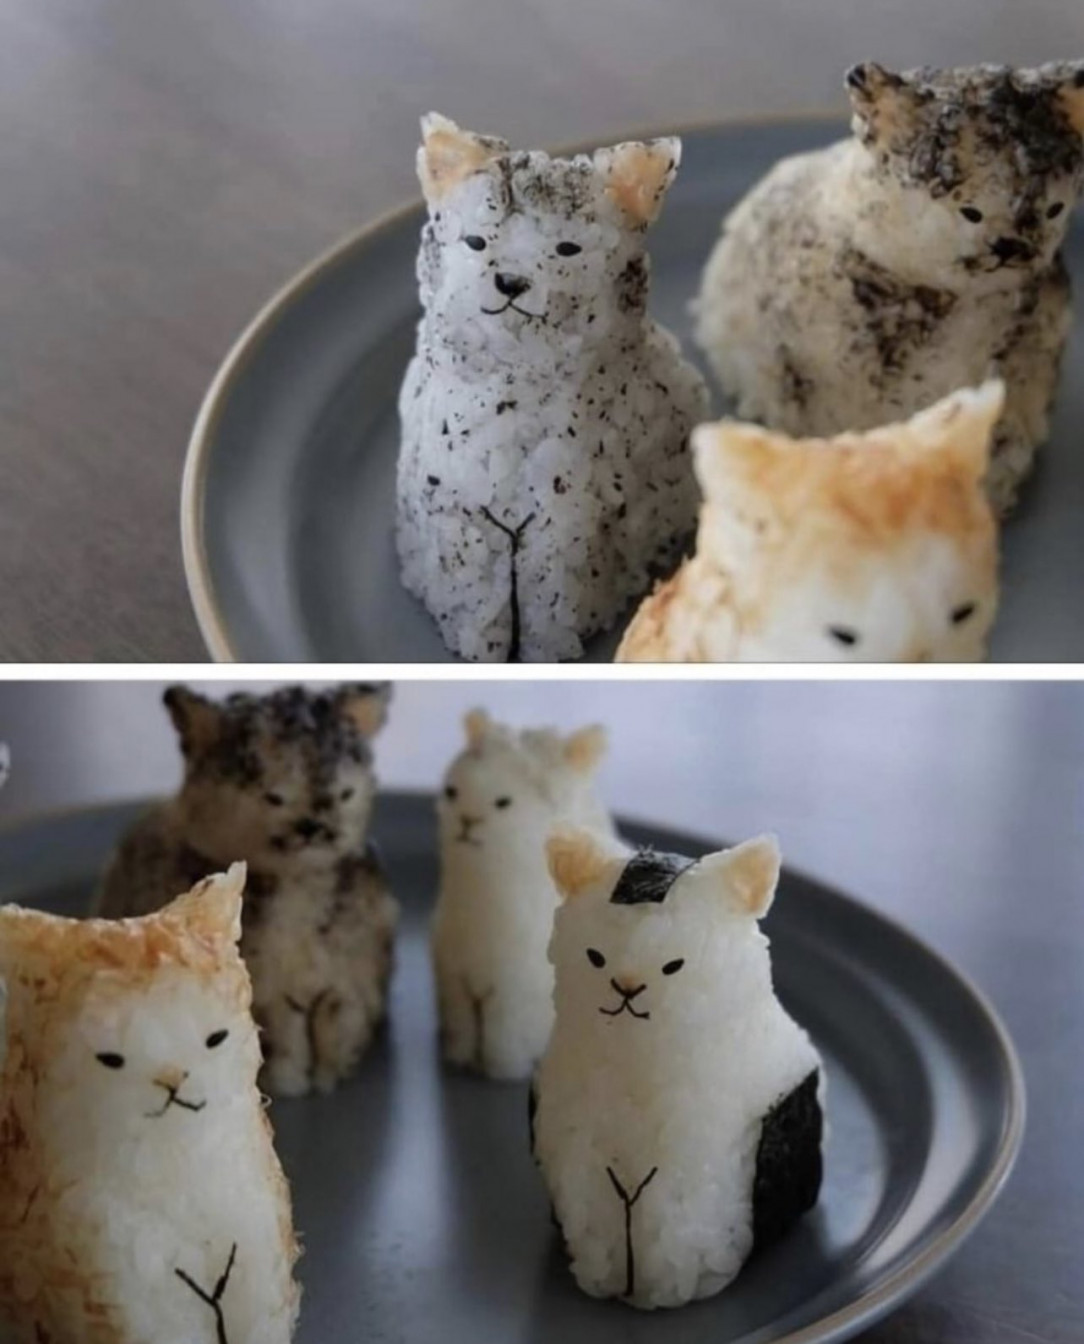 These onigiri (rice balls) perfectly shaped like cats